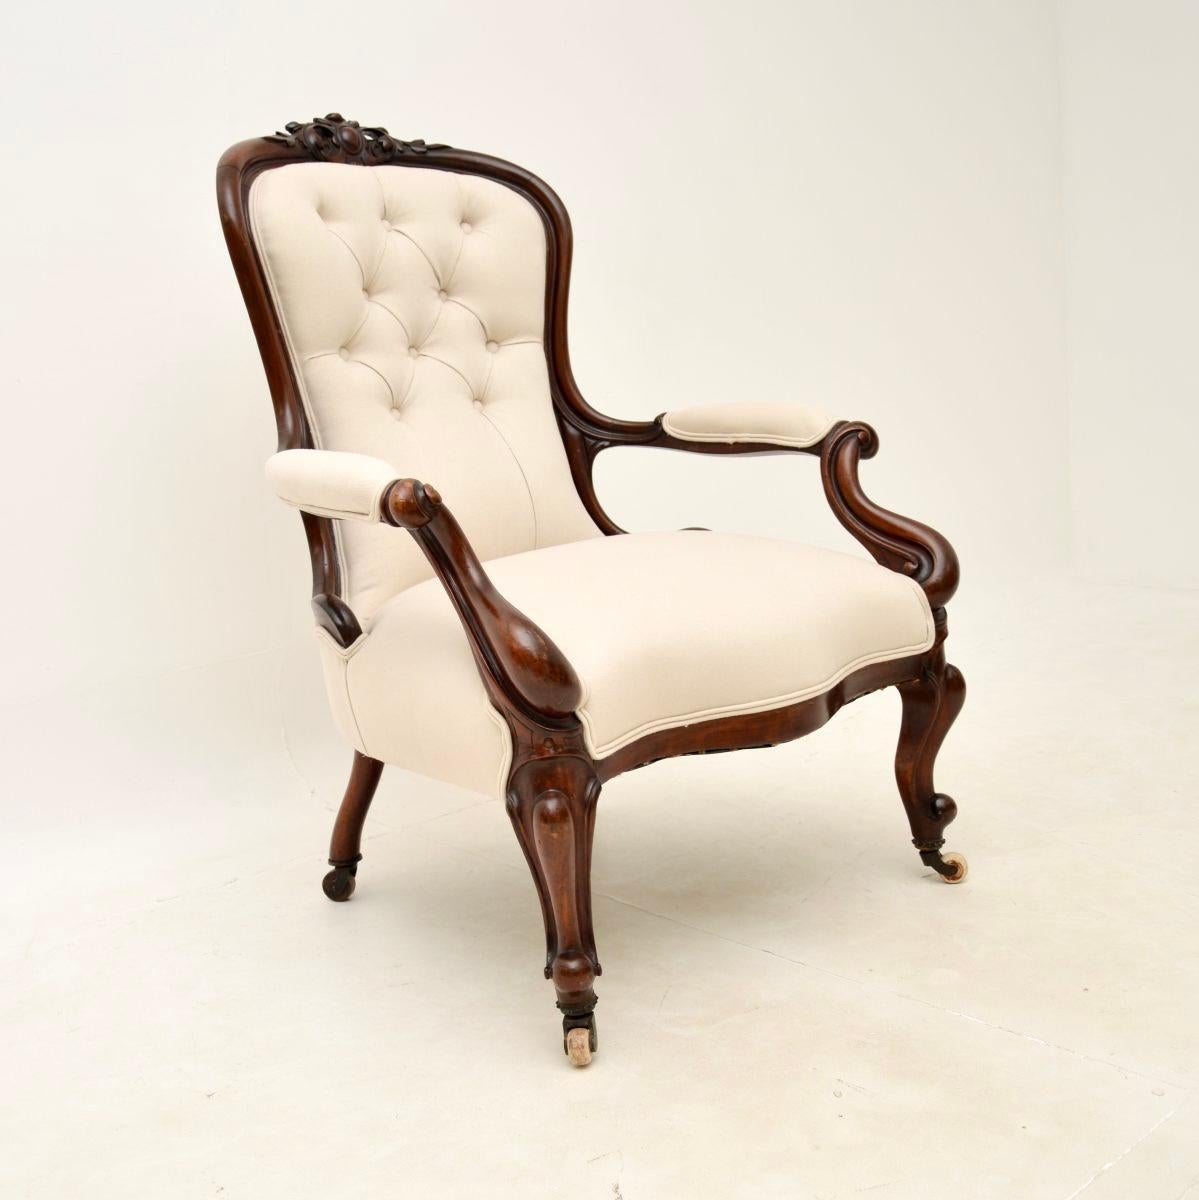 Excellent fauteuil victorien ancien à dossier en cuillère. Elle a été fabriquée en Angleterre et date des années 1860-1880.

La qualité est fantastique, il est très bien conçu et est également extrêmement confortable. Le cadre est très bien sculpté